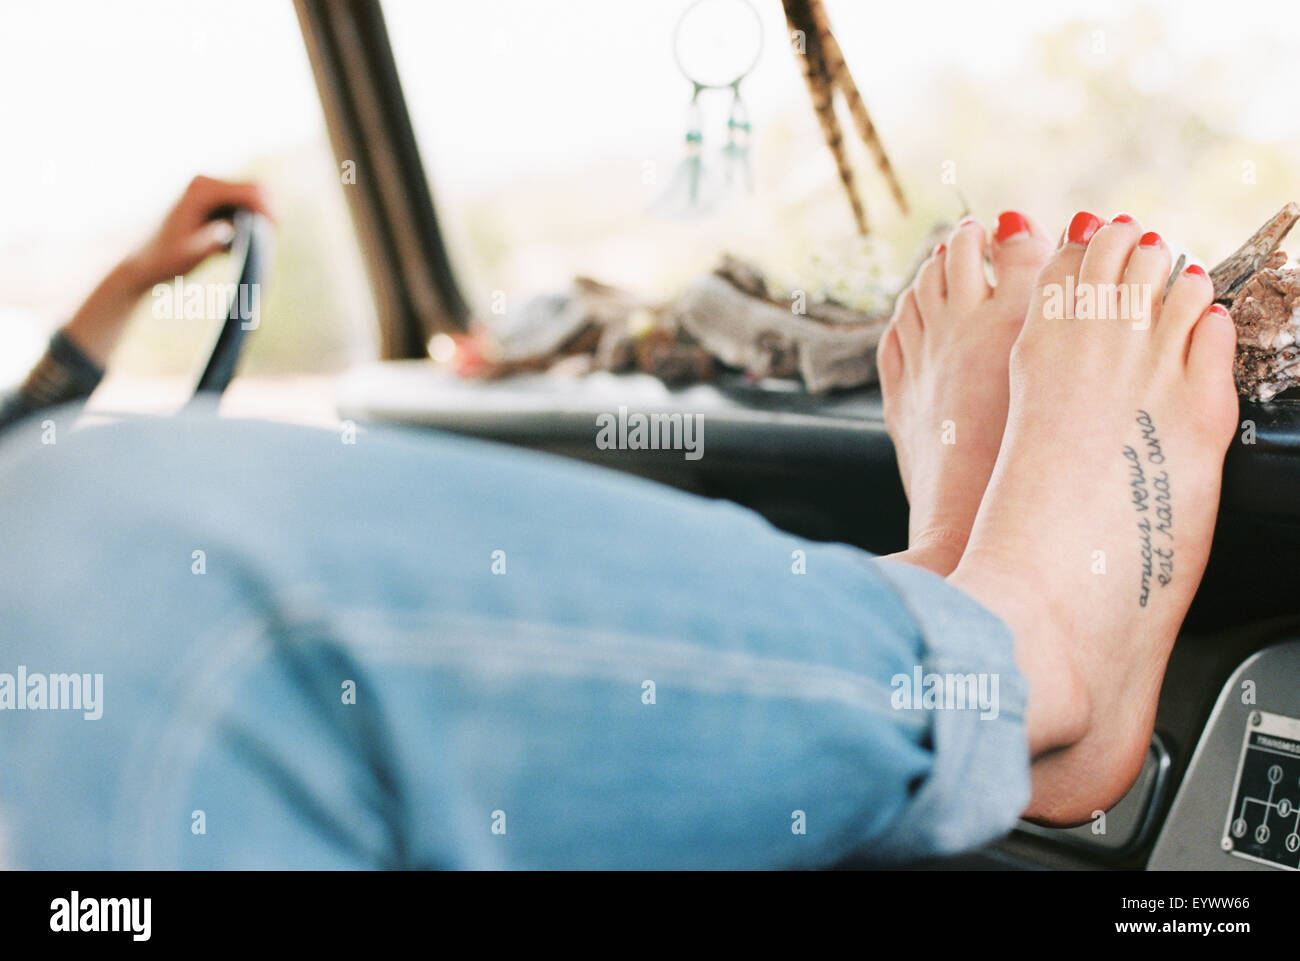 Mujer descansando sus pies descalzos en el tablero de a bordo de un 4x4, un tatuaje en su pie derecho. Foto de stock